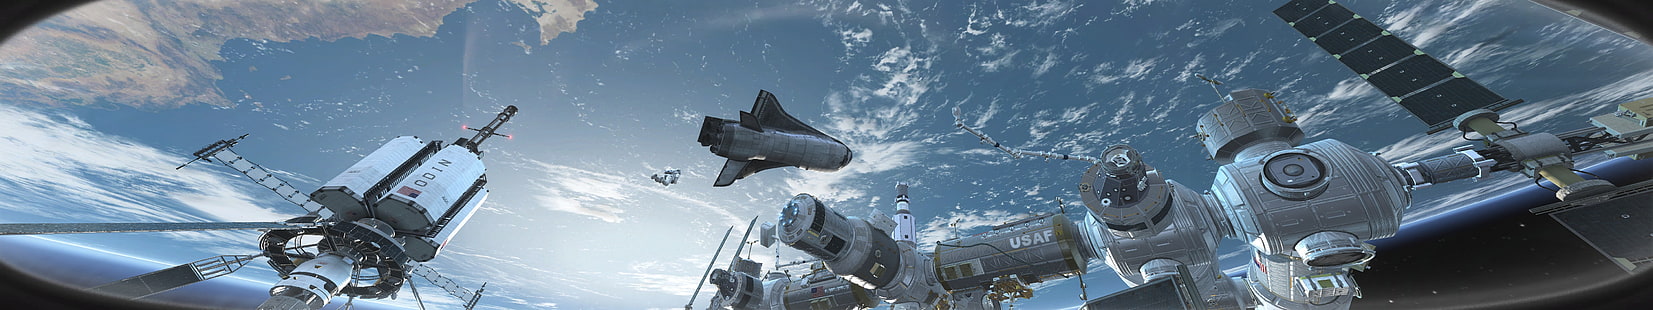 تصوير قمر صناعي رمادي ، مركبة فضائية في الفضاء ، شاشات عرض متعددة ، Call of Duty: Ghosts ، فضاء ، ألعاب فيديو ، فن رقمي ، تقديم ، CGI ، Call of Duty، خلفية HD HD wallpaper